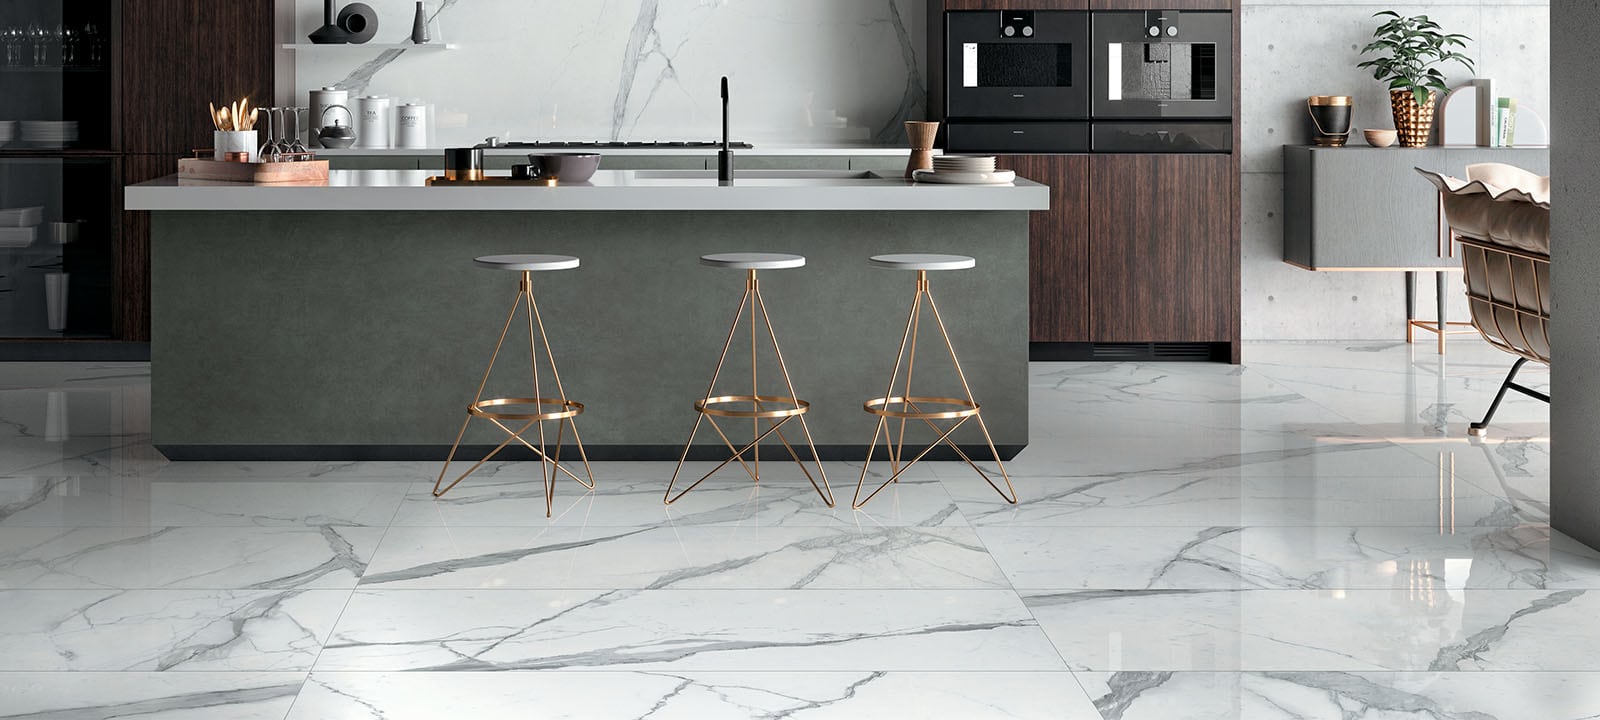 Statuario Cosmo Porcelain Floor Tiles Kitchen IvySpace